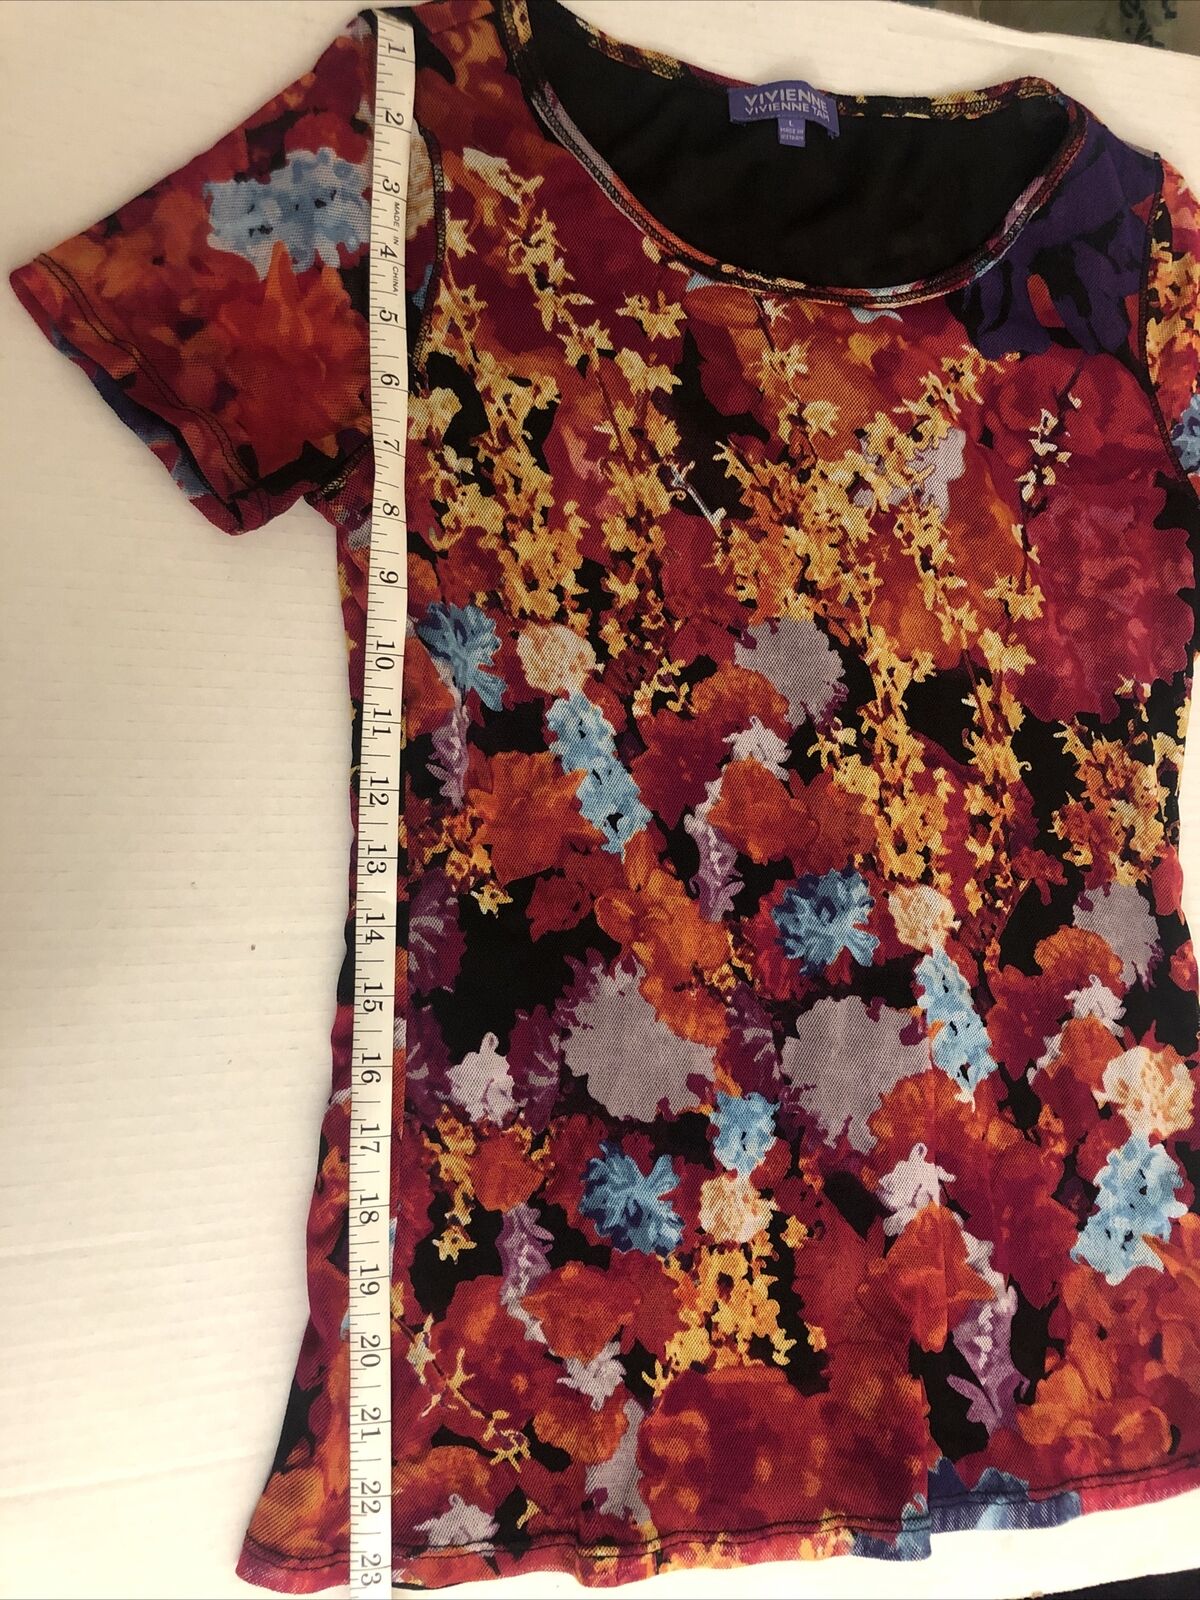 VIVIENNE  Vivienne Tam Top Size Large Women’s Multicolored FLoral Knit Shirt